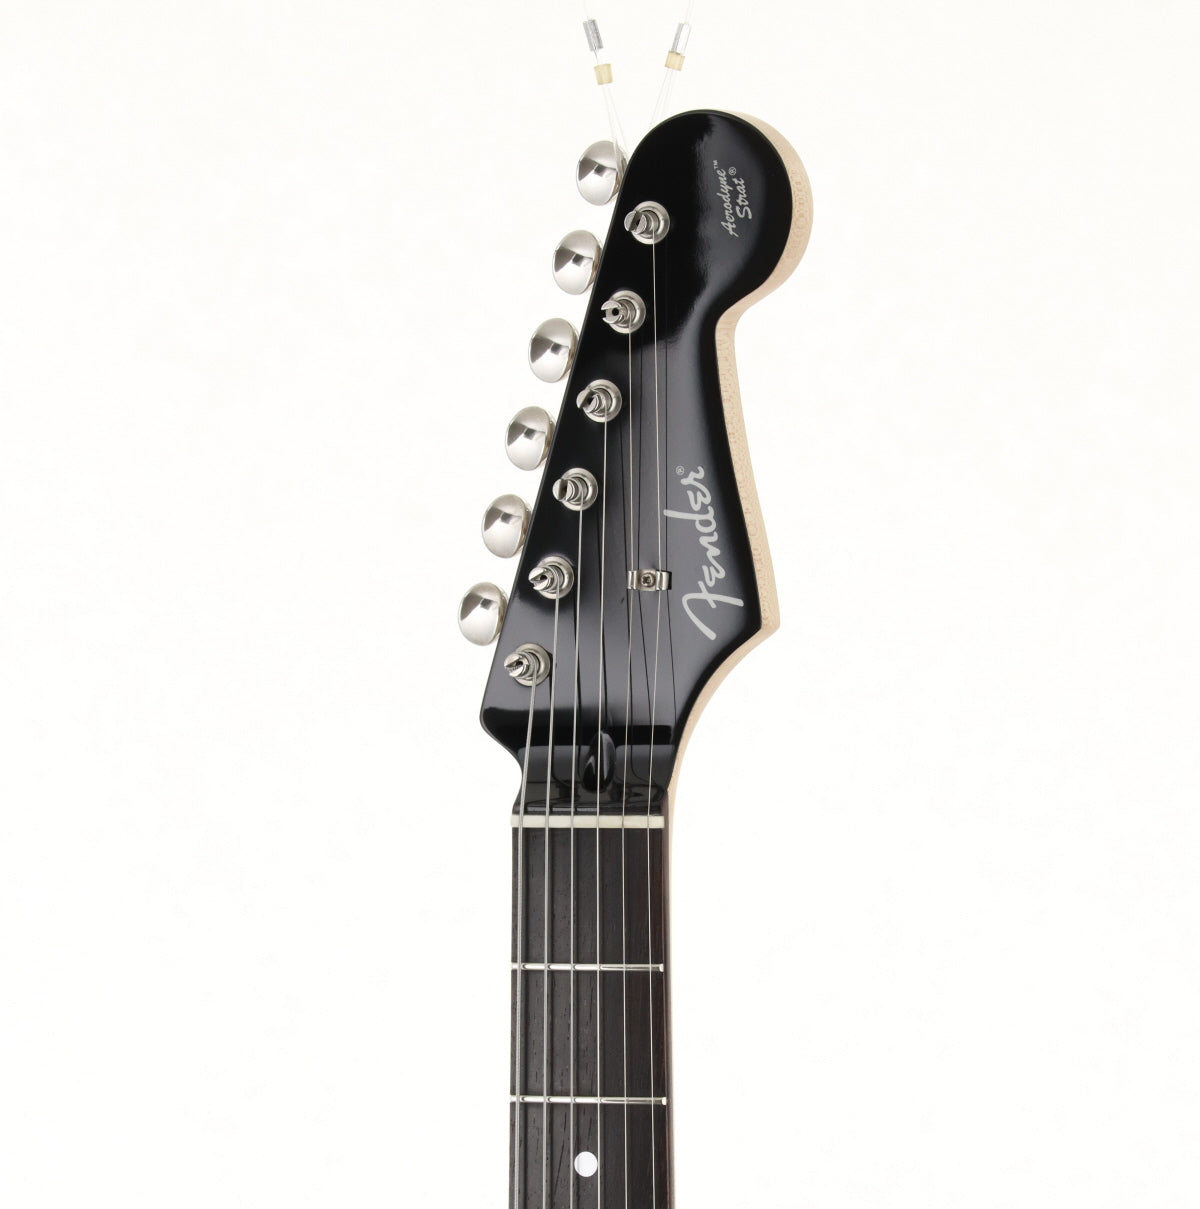 [SN JD12029043] USED Fender Japan / AST Black [03]